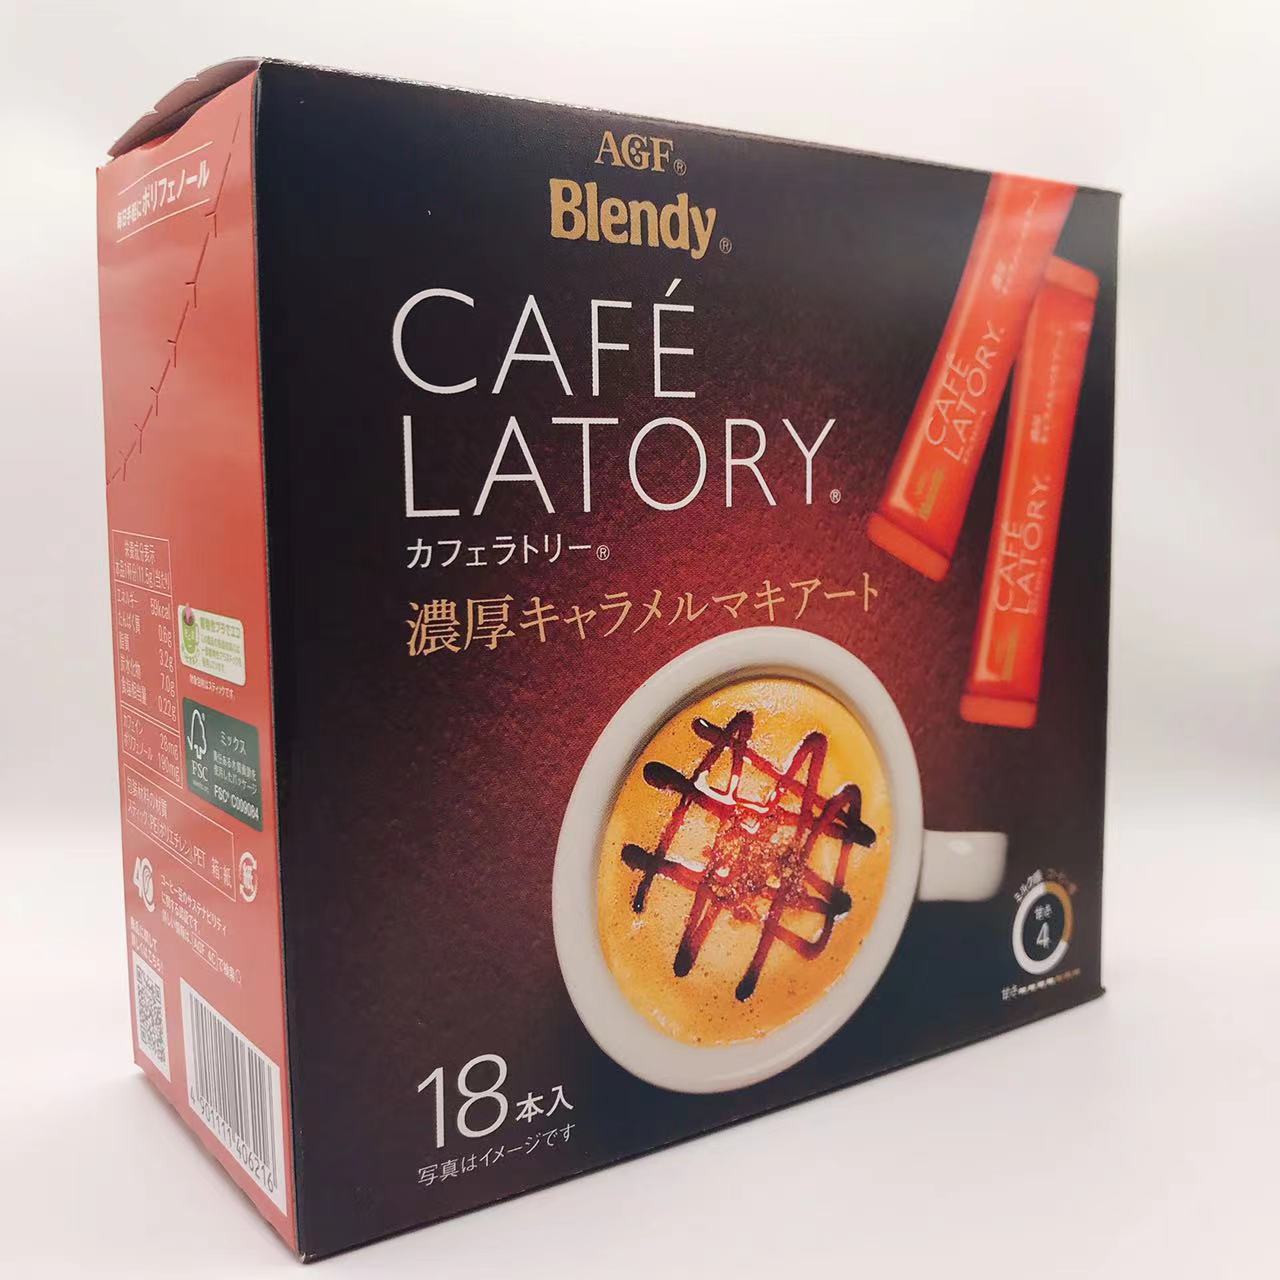 味之素AGF Blendy AGF Brendy Cafe Ratery Stick Coffee豐富的Charamerma Kiart（11.5g * 18件）